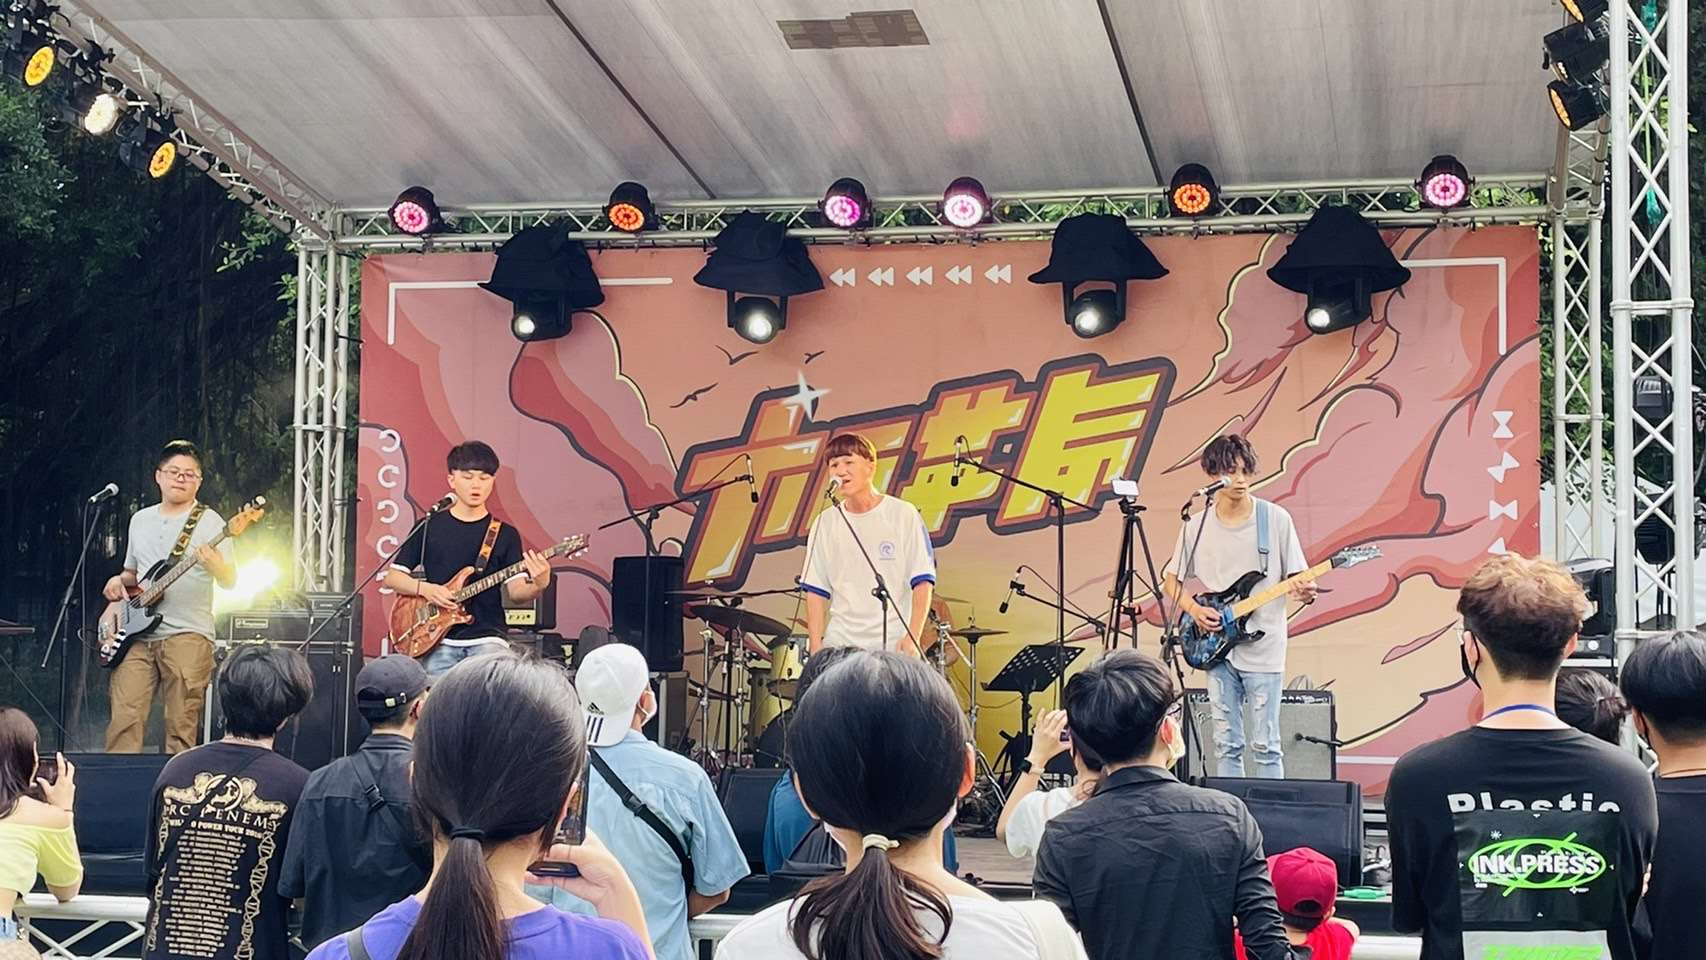 雲縣府今舉辦「六月革命音樂祭」 要讓青年熱情揮灑青春不設限